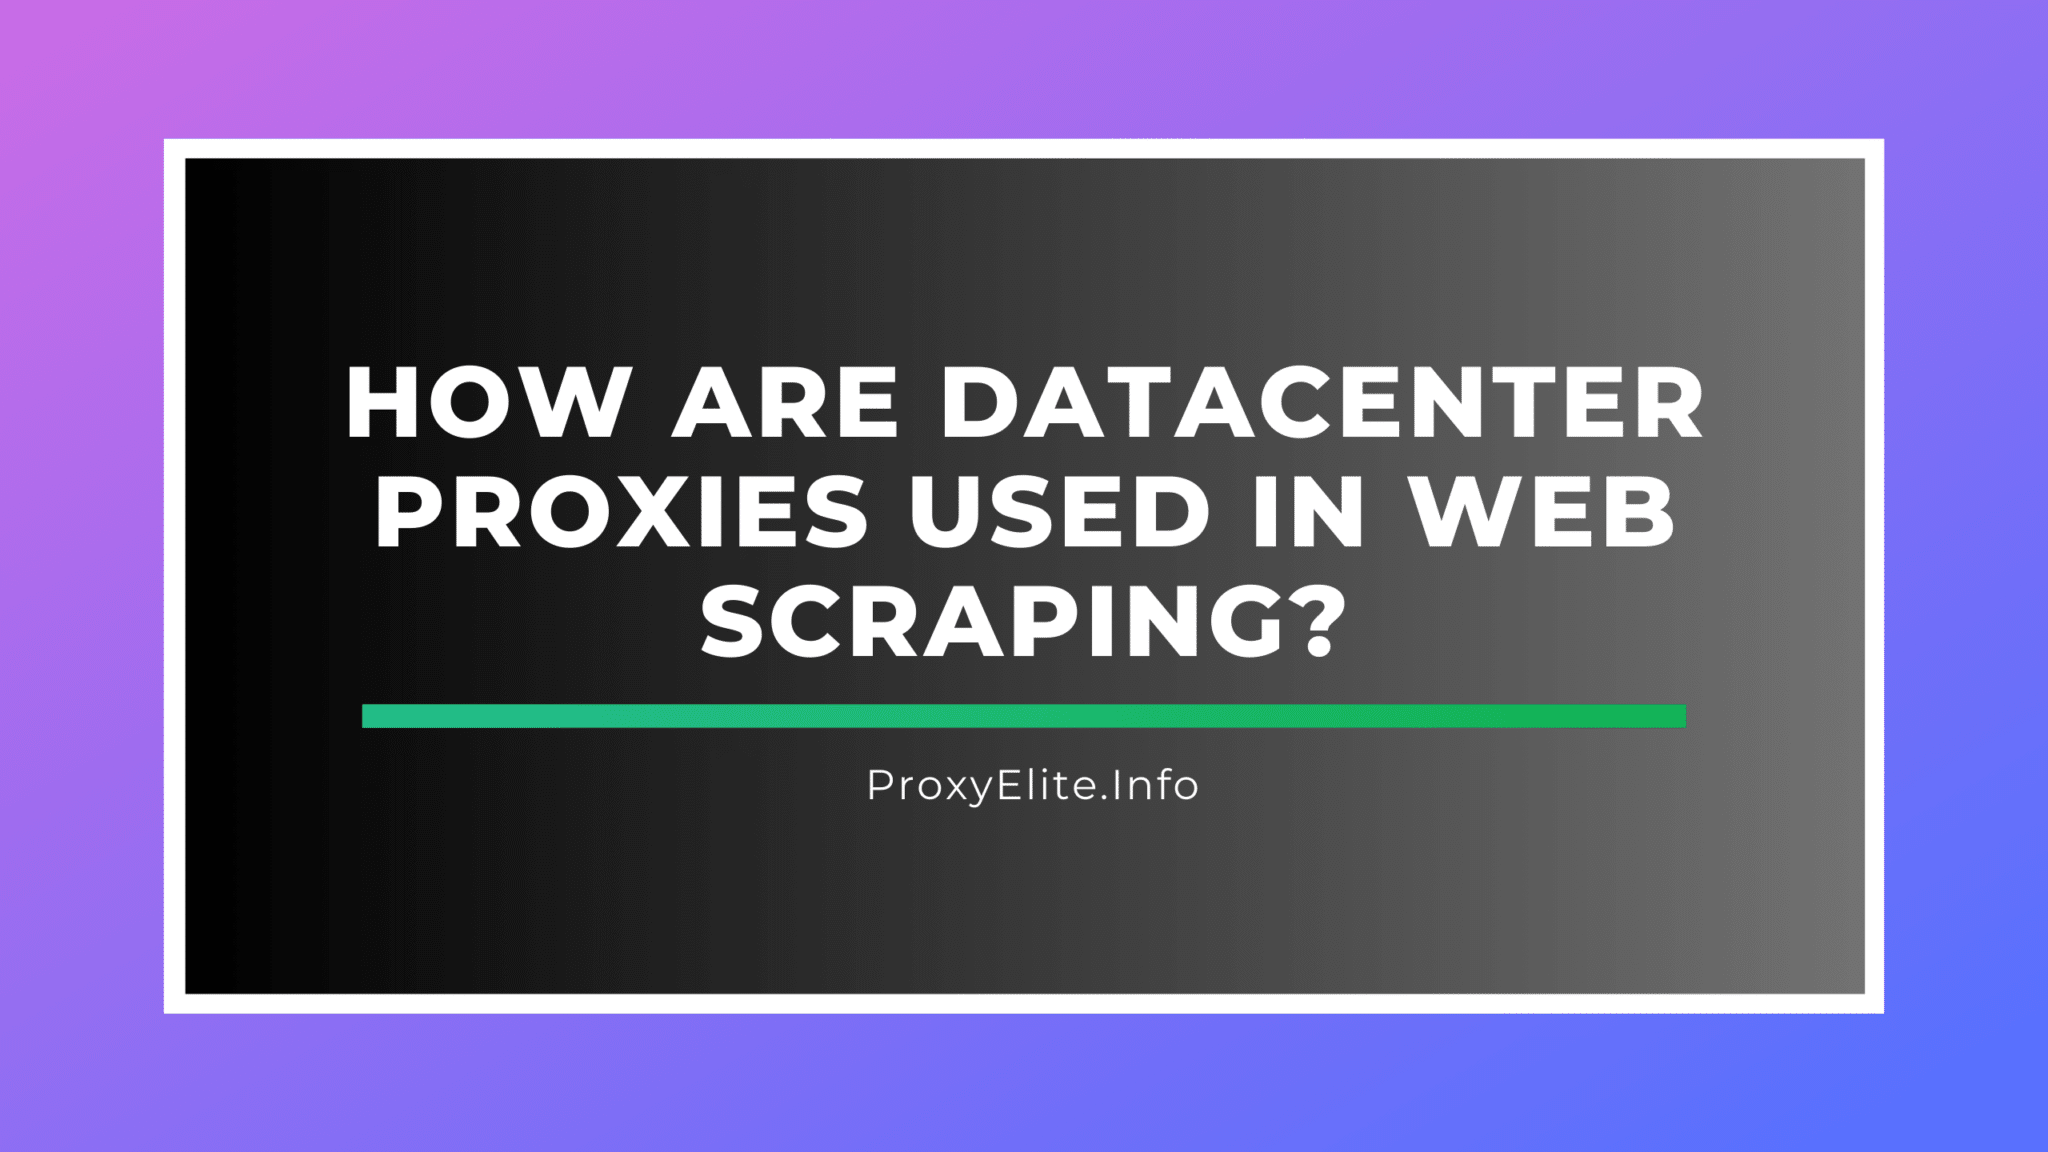 Como os proxies de datacenter são usados em web scraping?